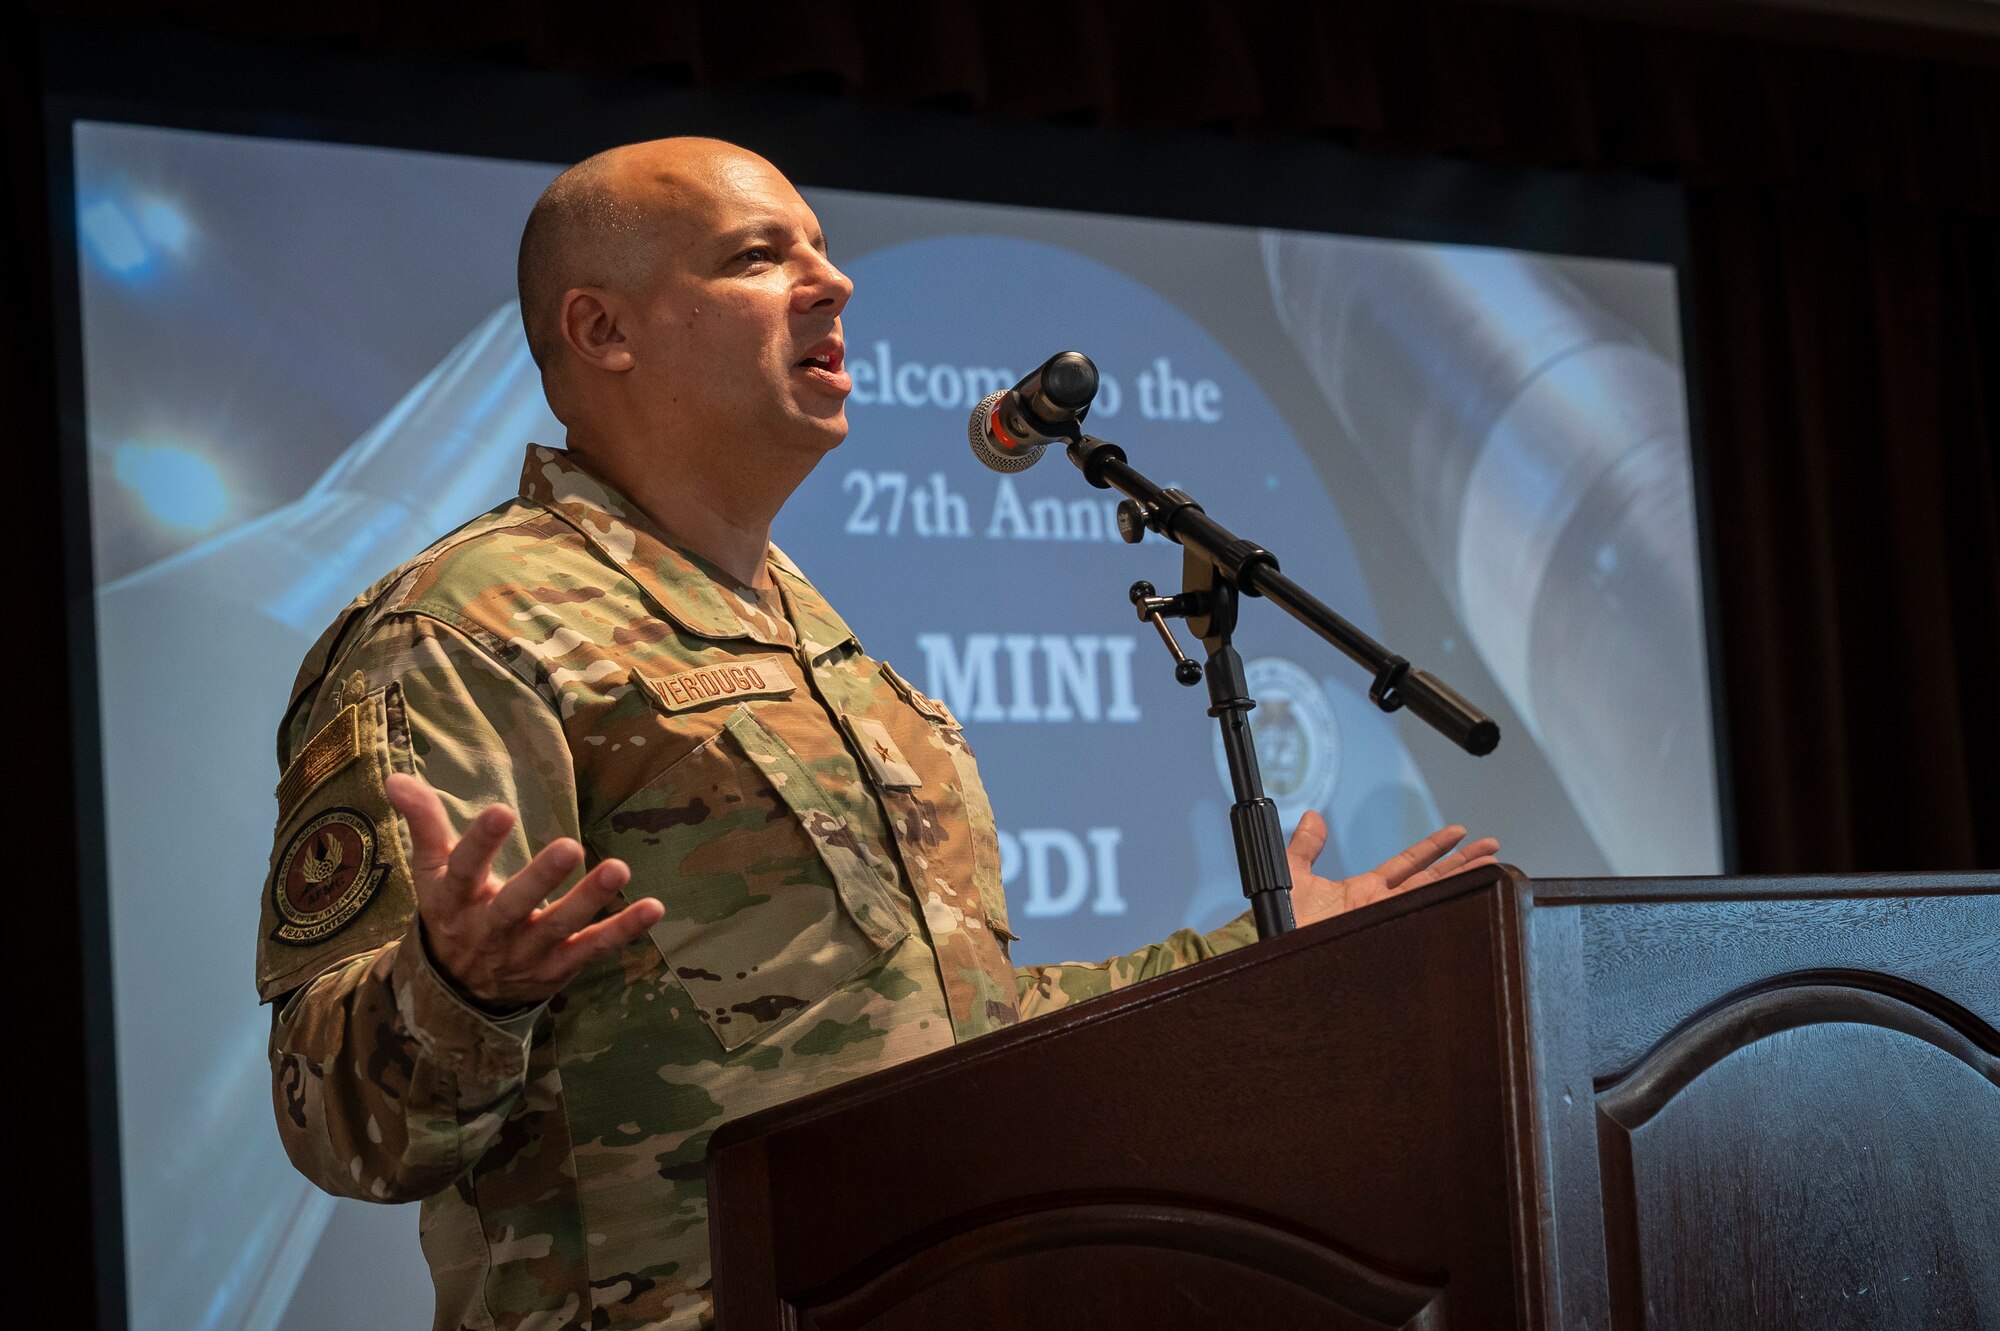 Man wearing Air Force uniform speaking at podium.